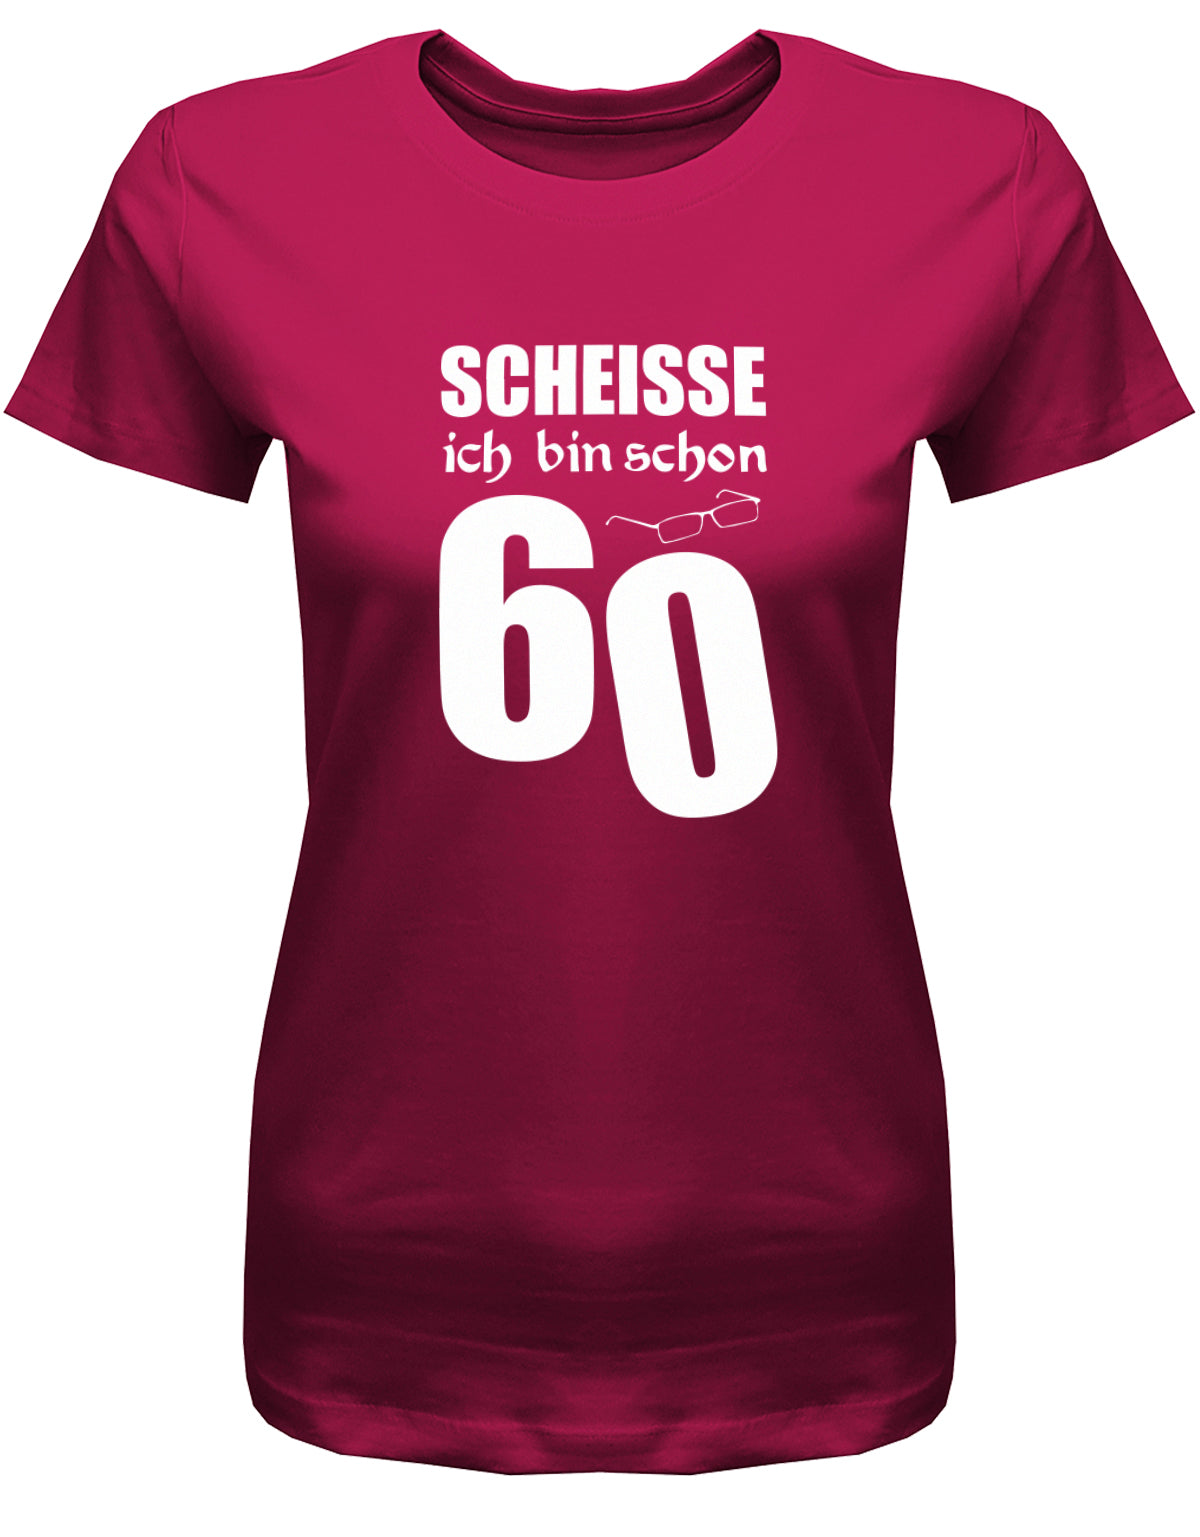 Lustiges T-Shirt zum 60. Geburtstag für die Frau Bedruckt mit Scheisse ich bin schon 60 Lesebrille. Sorbet